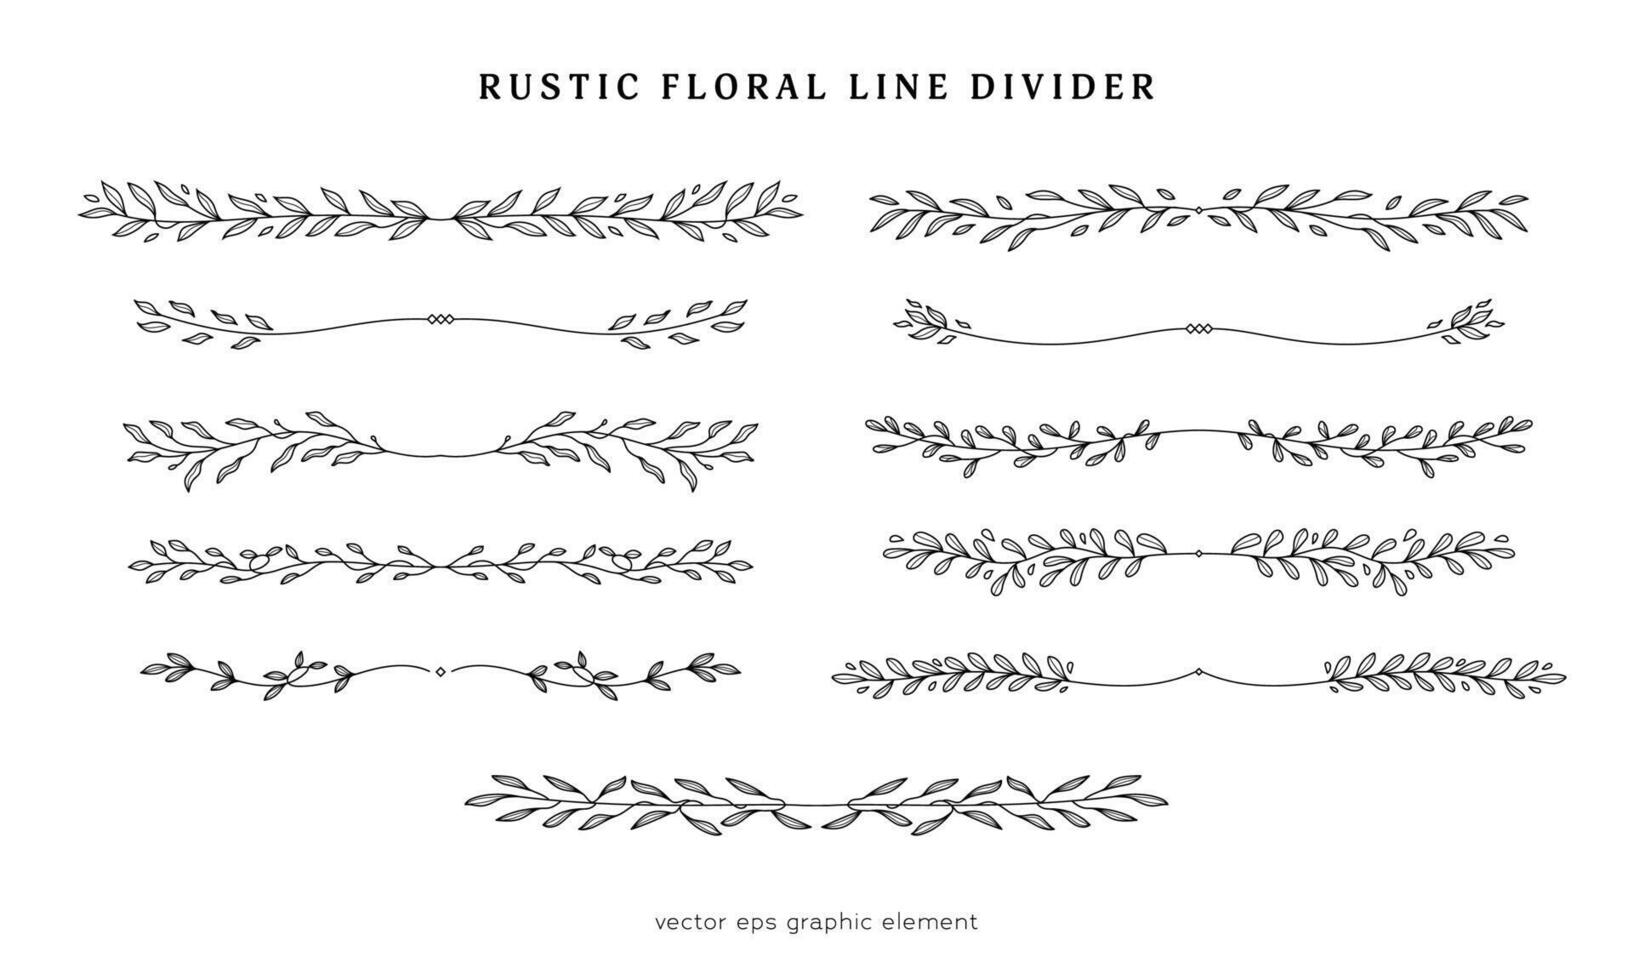 rustique floral ligne diviseur vecteur collection pour page disposition séparateur, rustique feuille branche ligne diviseur